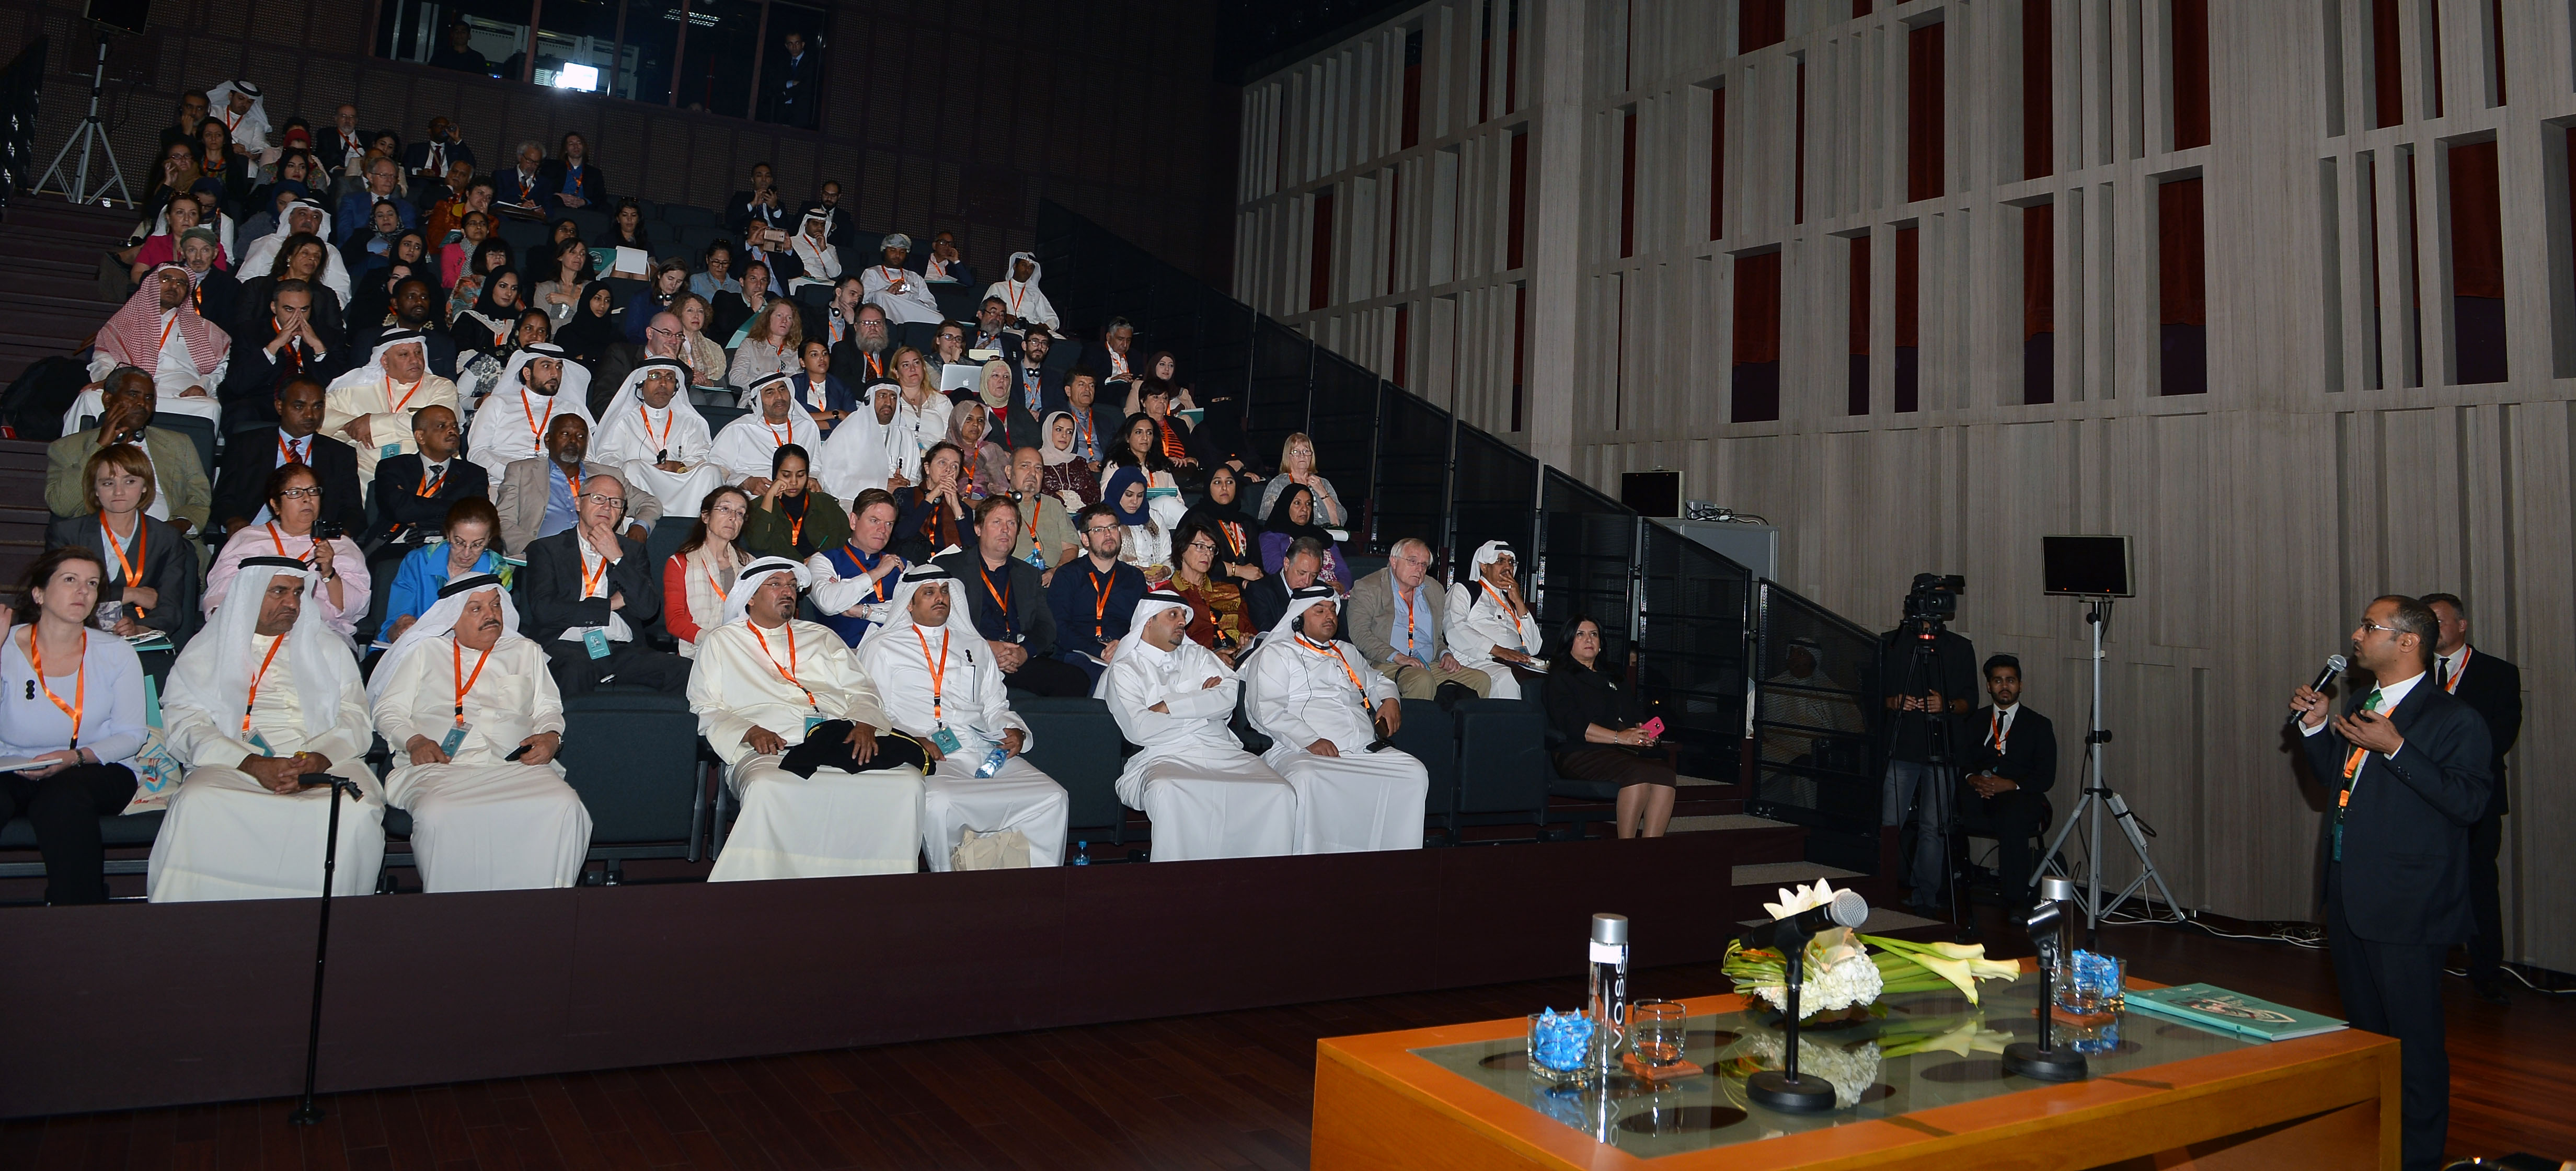 افتتاح مؤتمر الآثار الإسلامية من منظور عالمي في البحرين (2)